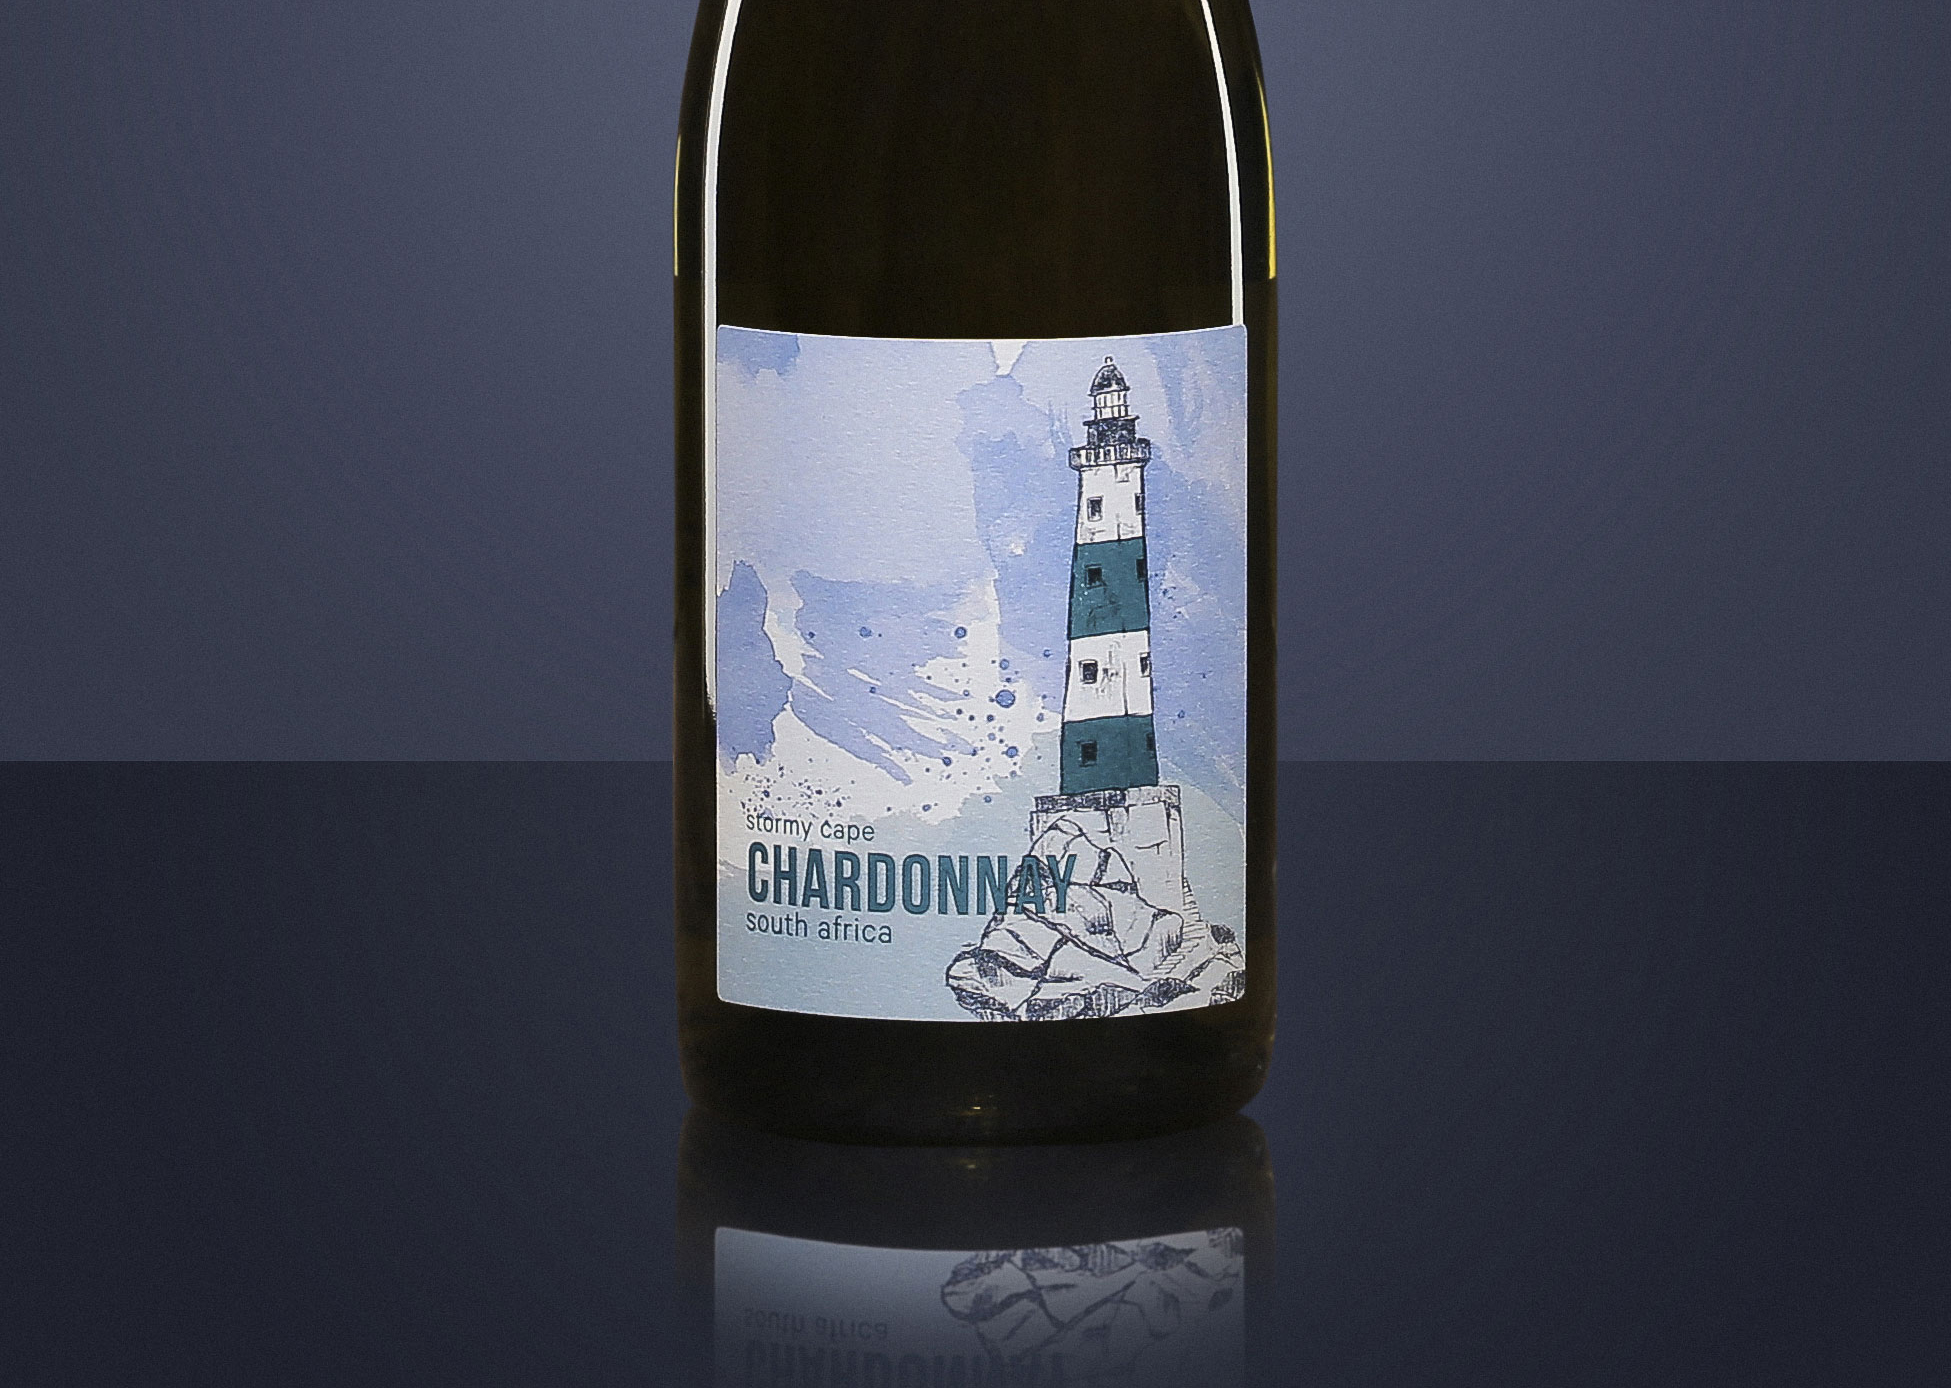 Stormy Cape Chardonnay